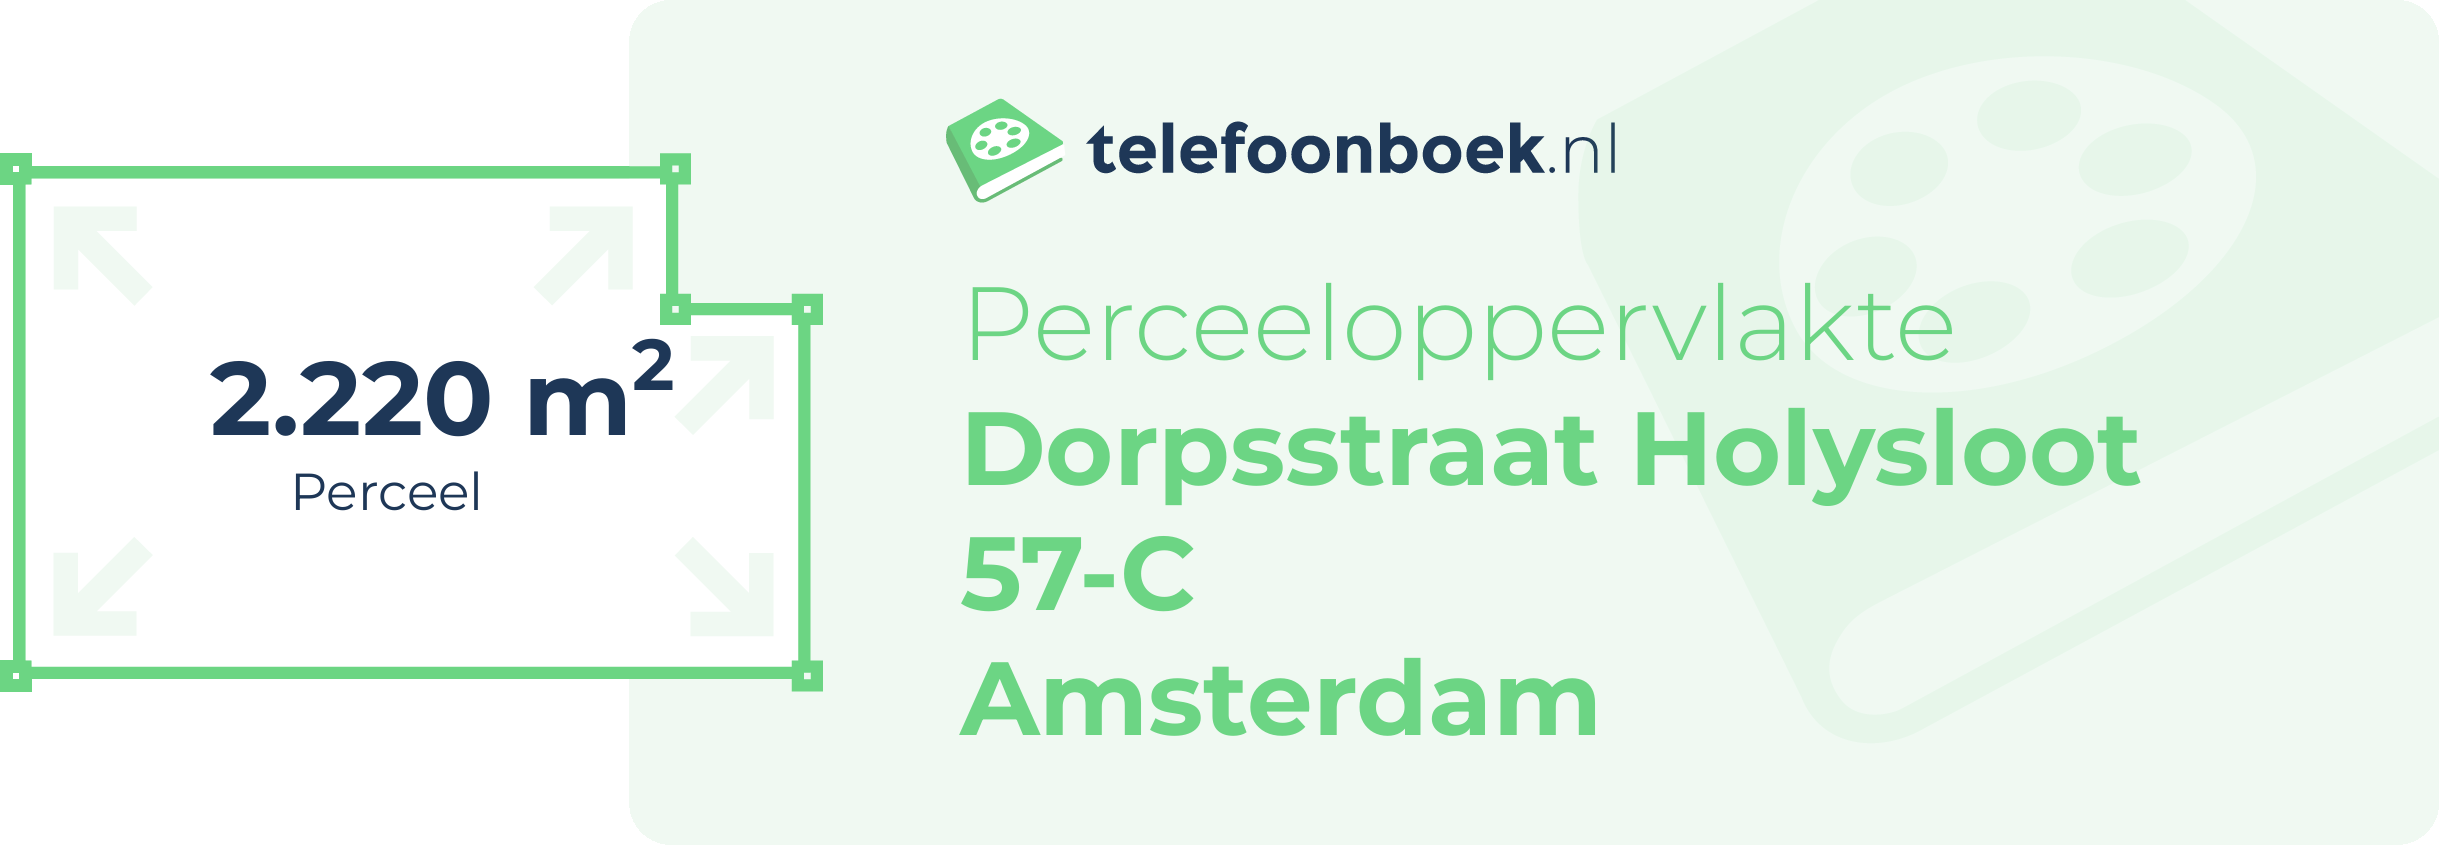 Perceeloppervlakte Dorpsstraat Holysloot 57-C Amsterdam